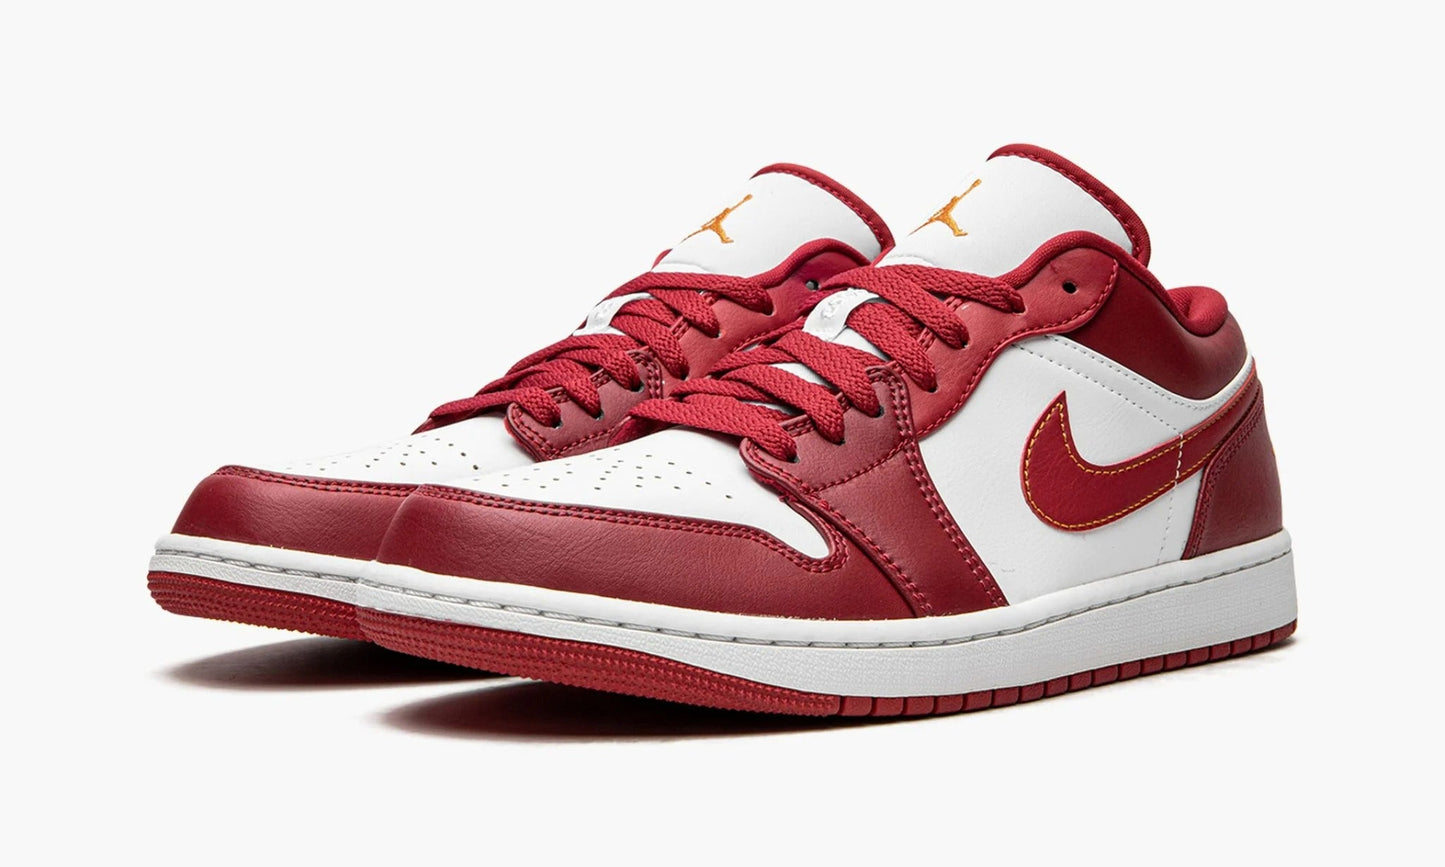 Nike AIr Jordan 1 Low "Cardinal Red" - 553558-607 | Grailshop